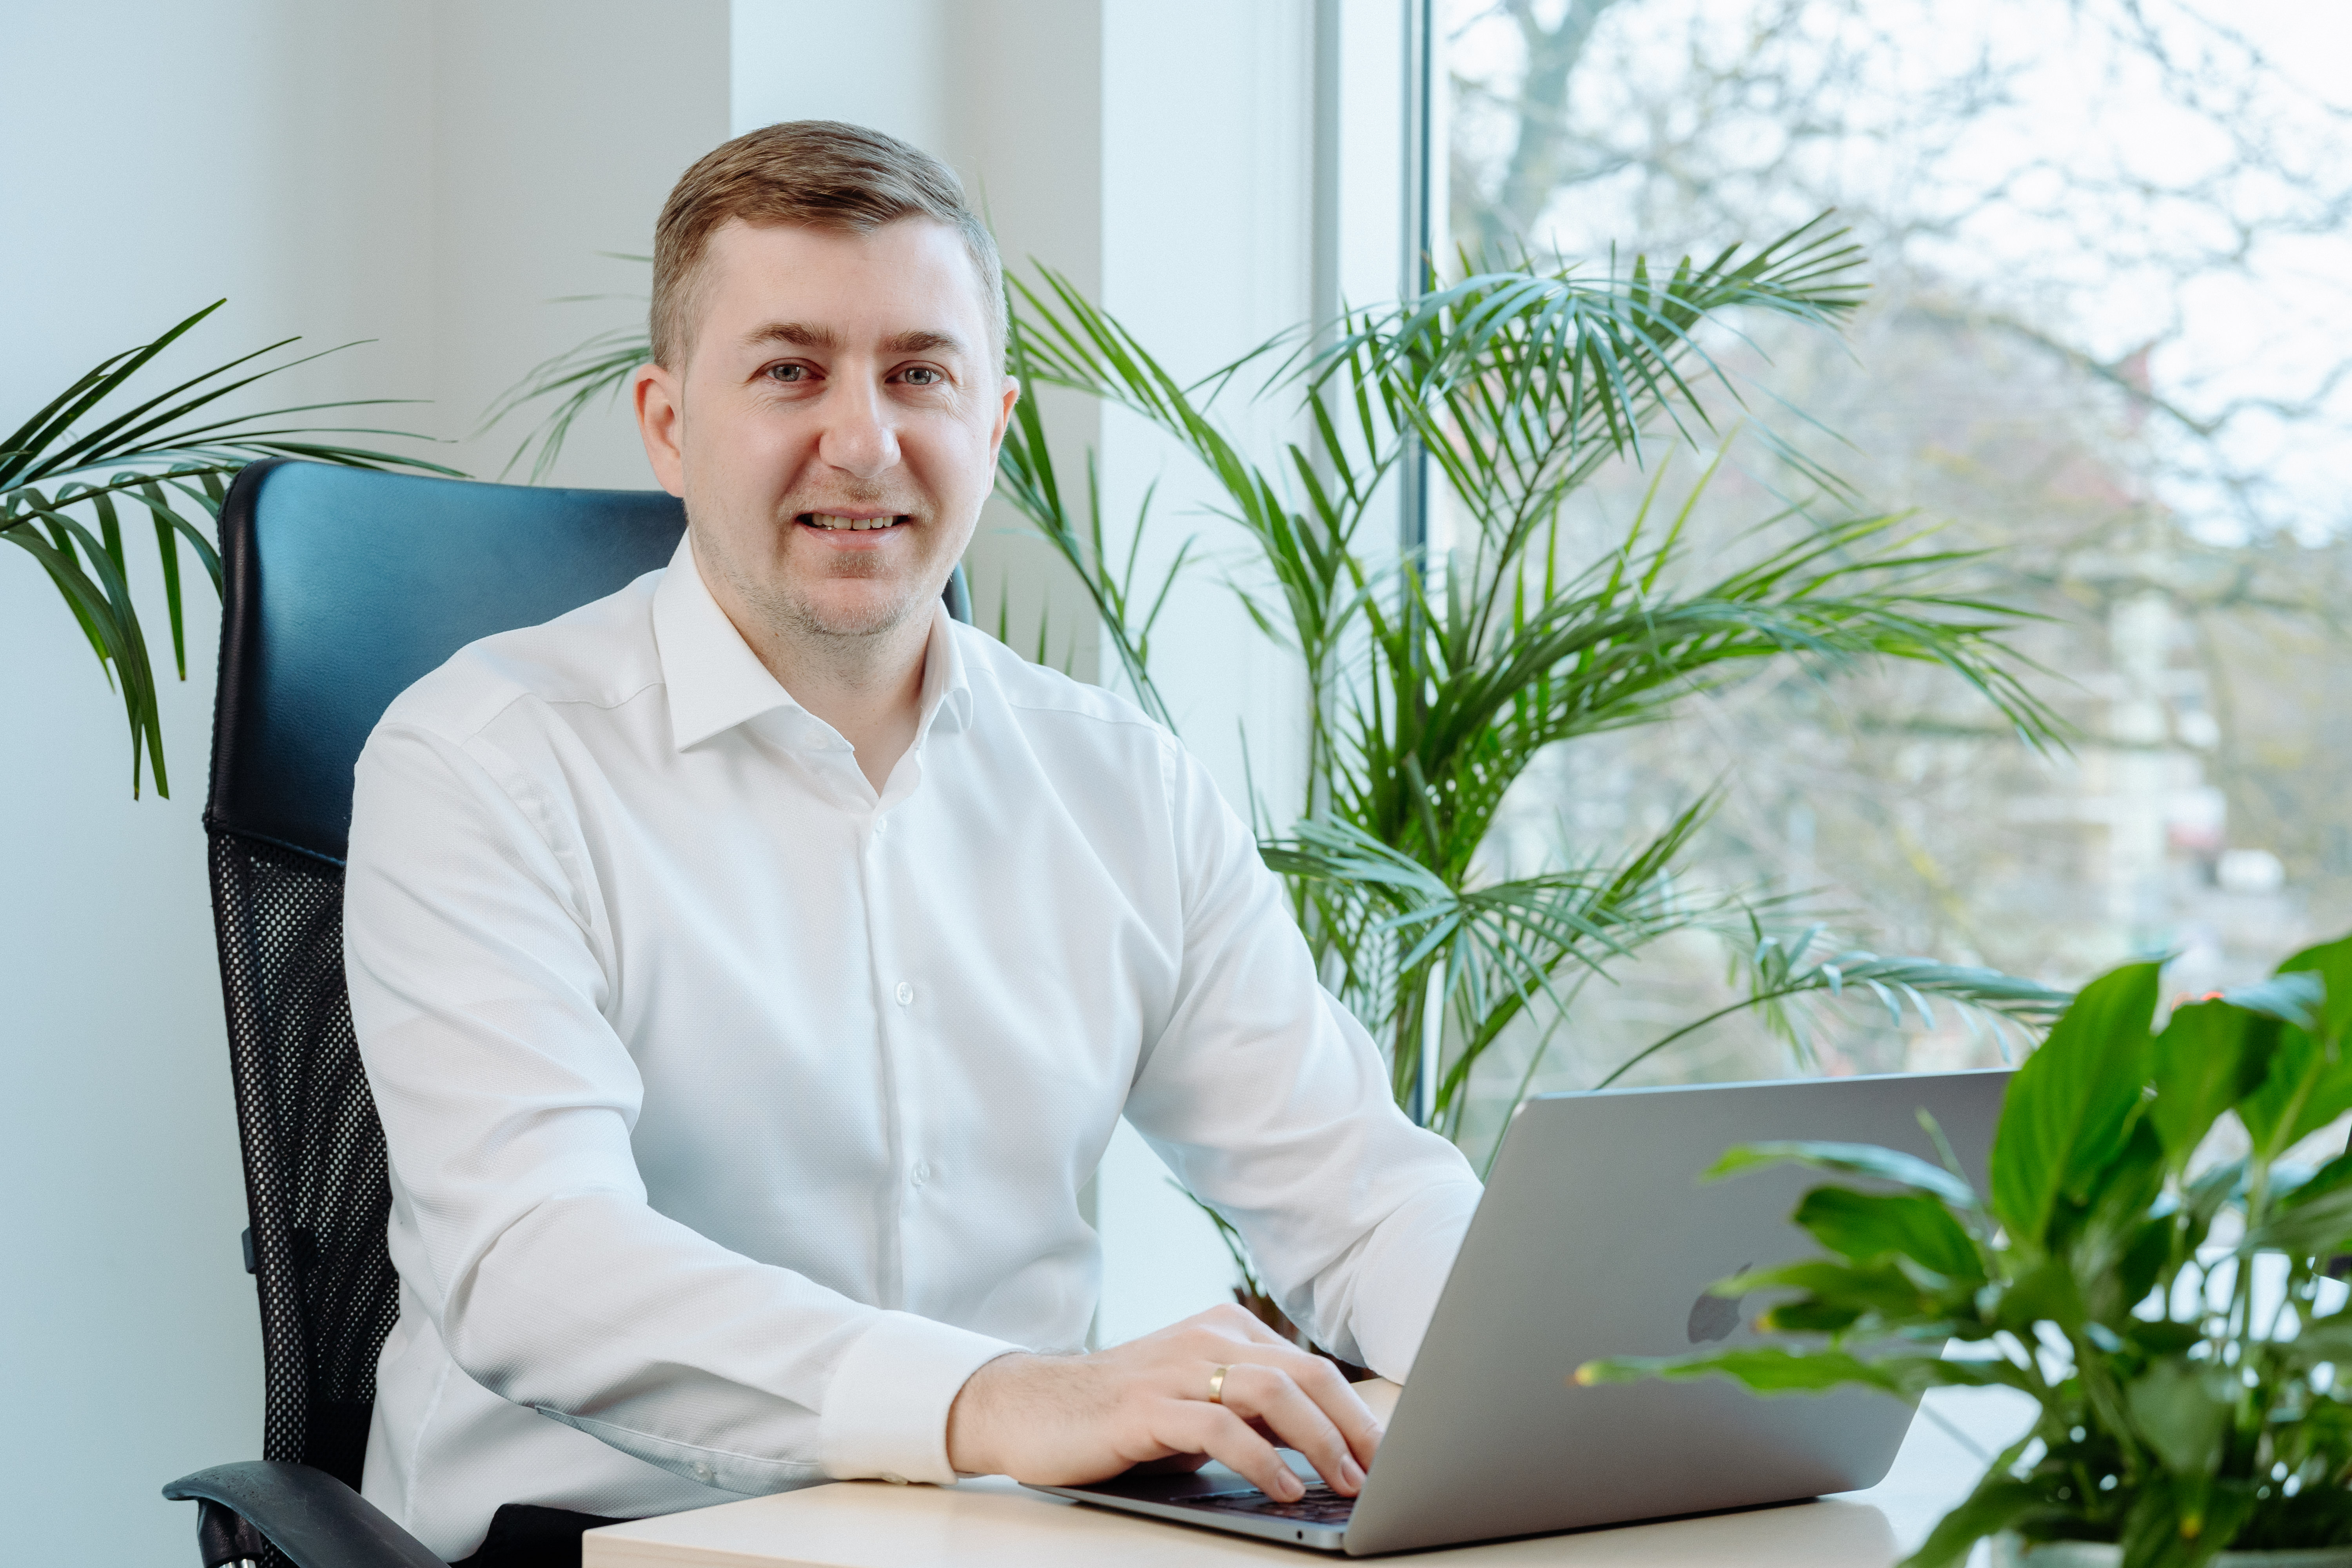 Piotr Kajda – Business Development Specialist, CEO of GPP company 